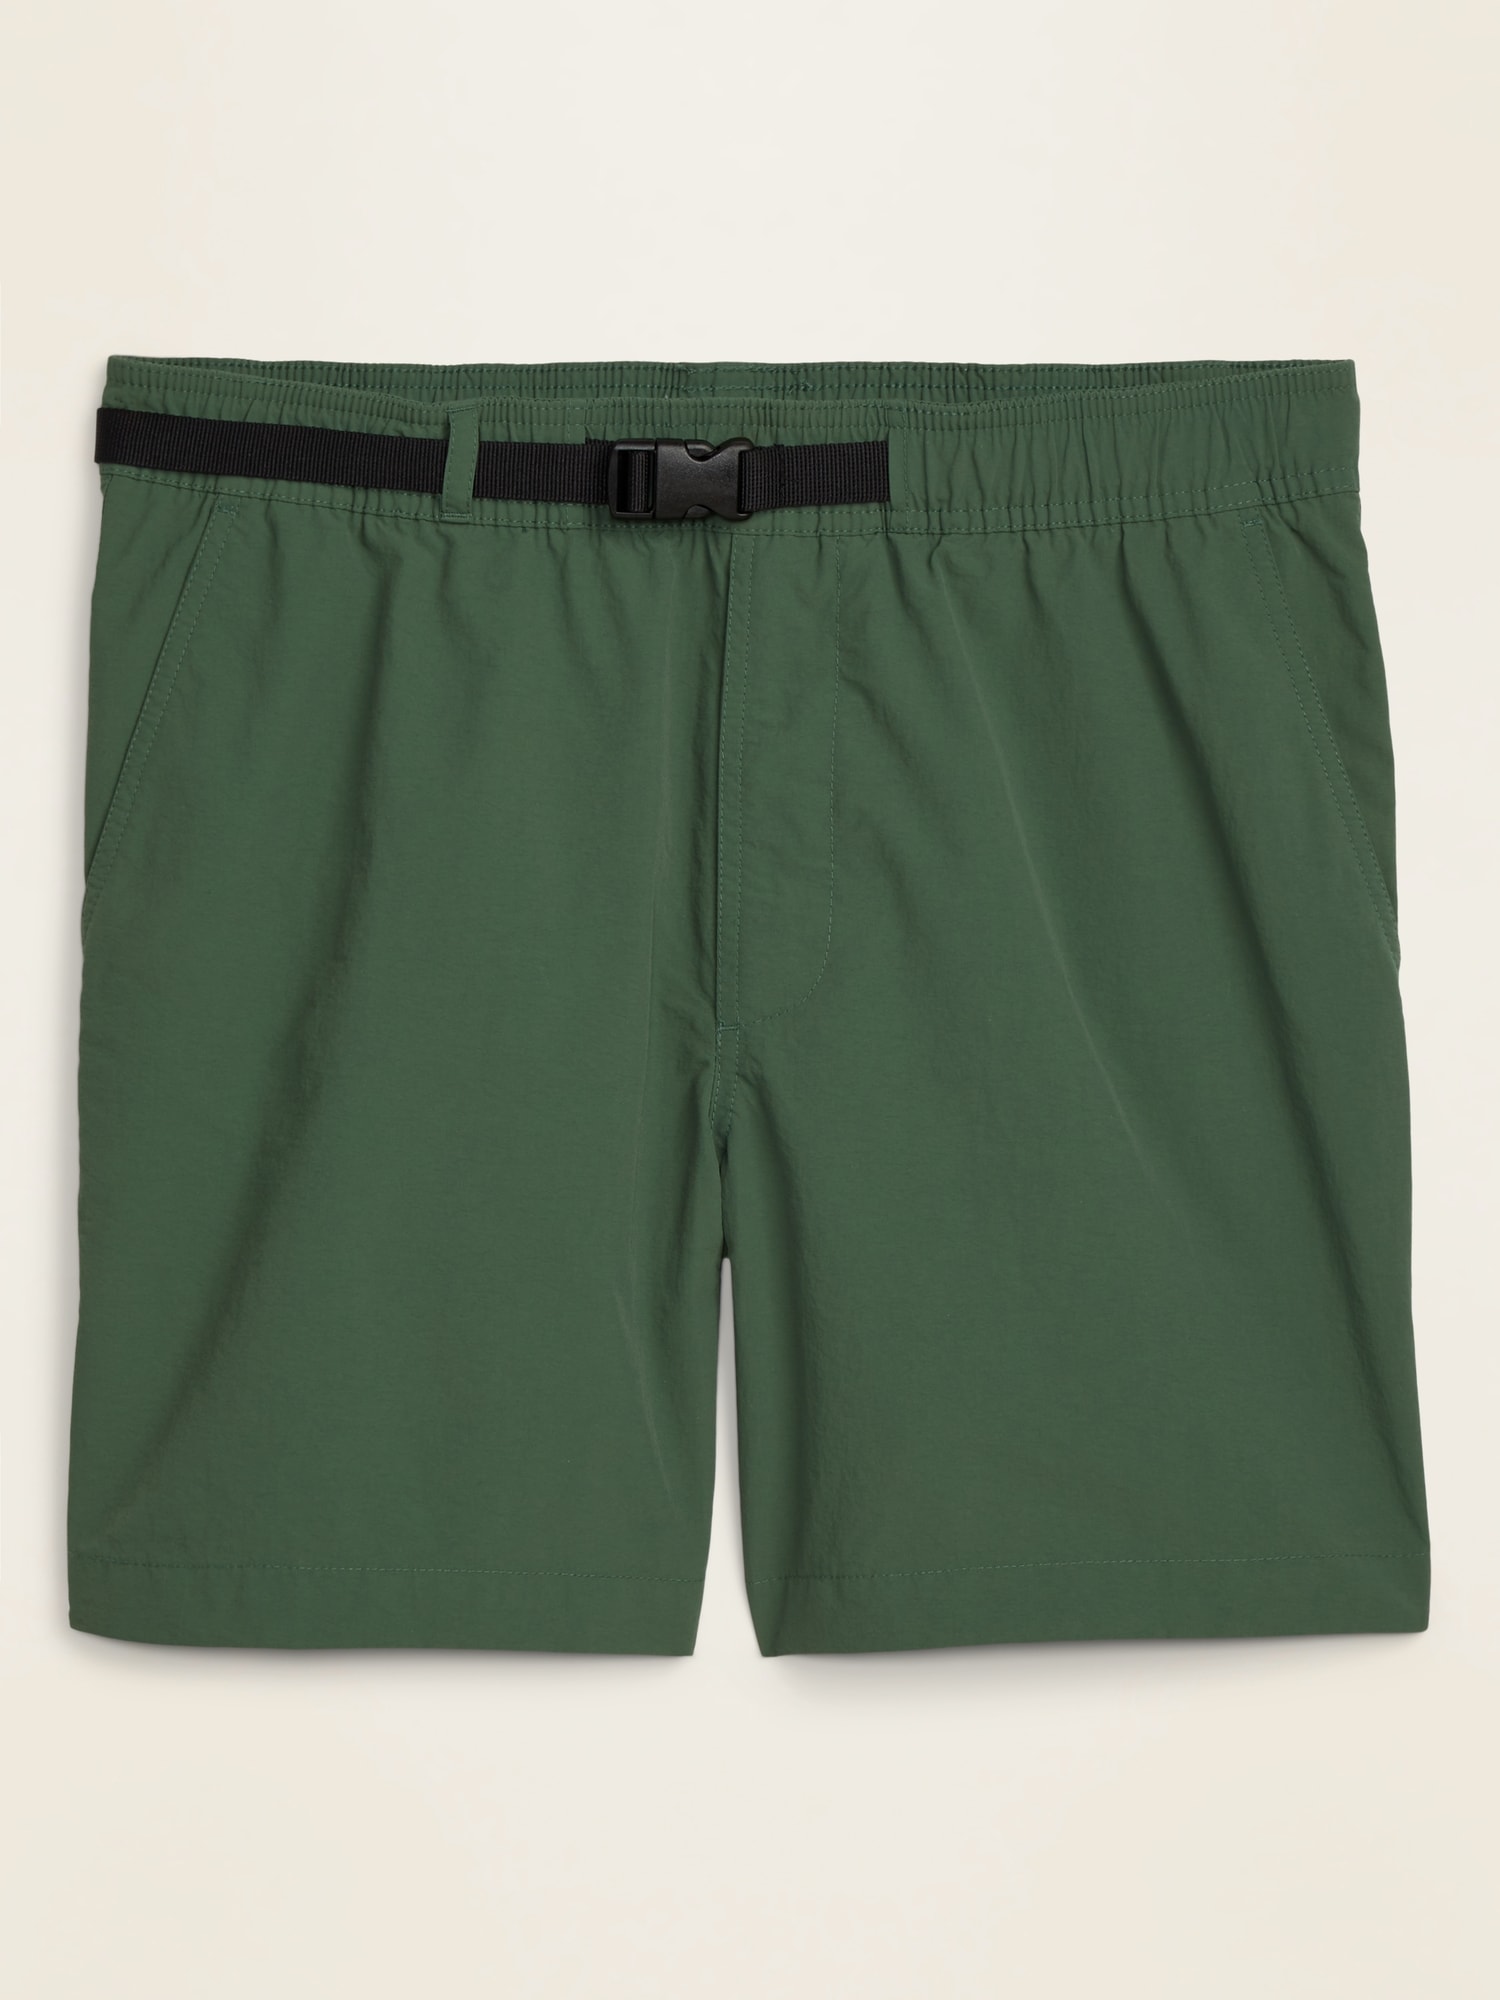 Nylon Hybrid-Tech Hiking Shorts for Men -- 6-inch inseam | Old Navy